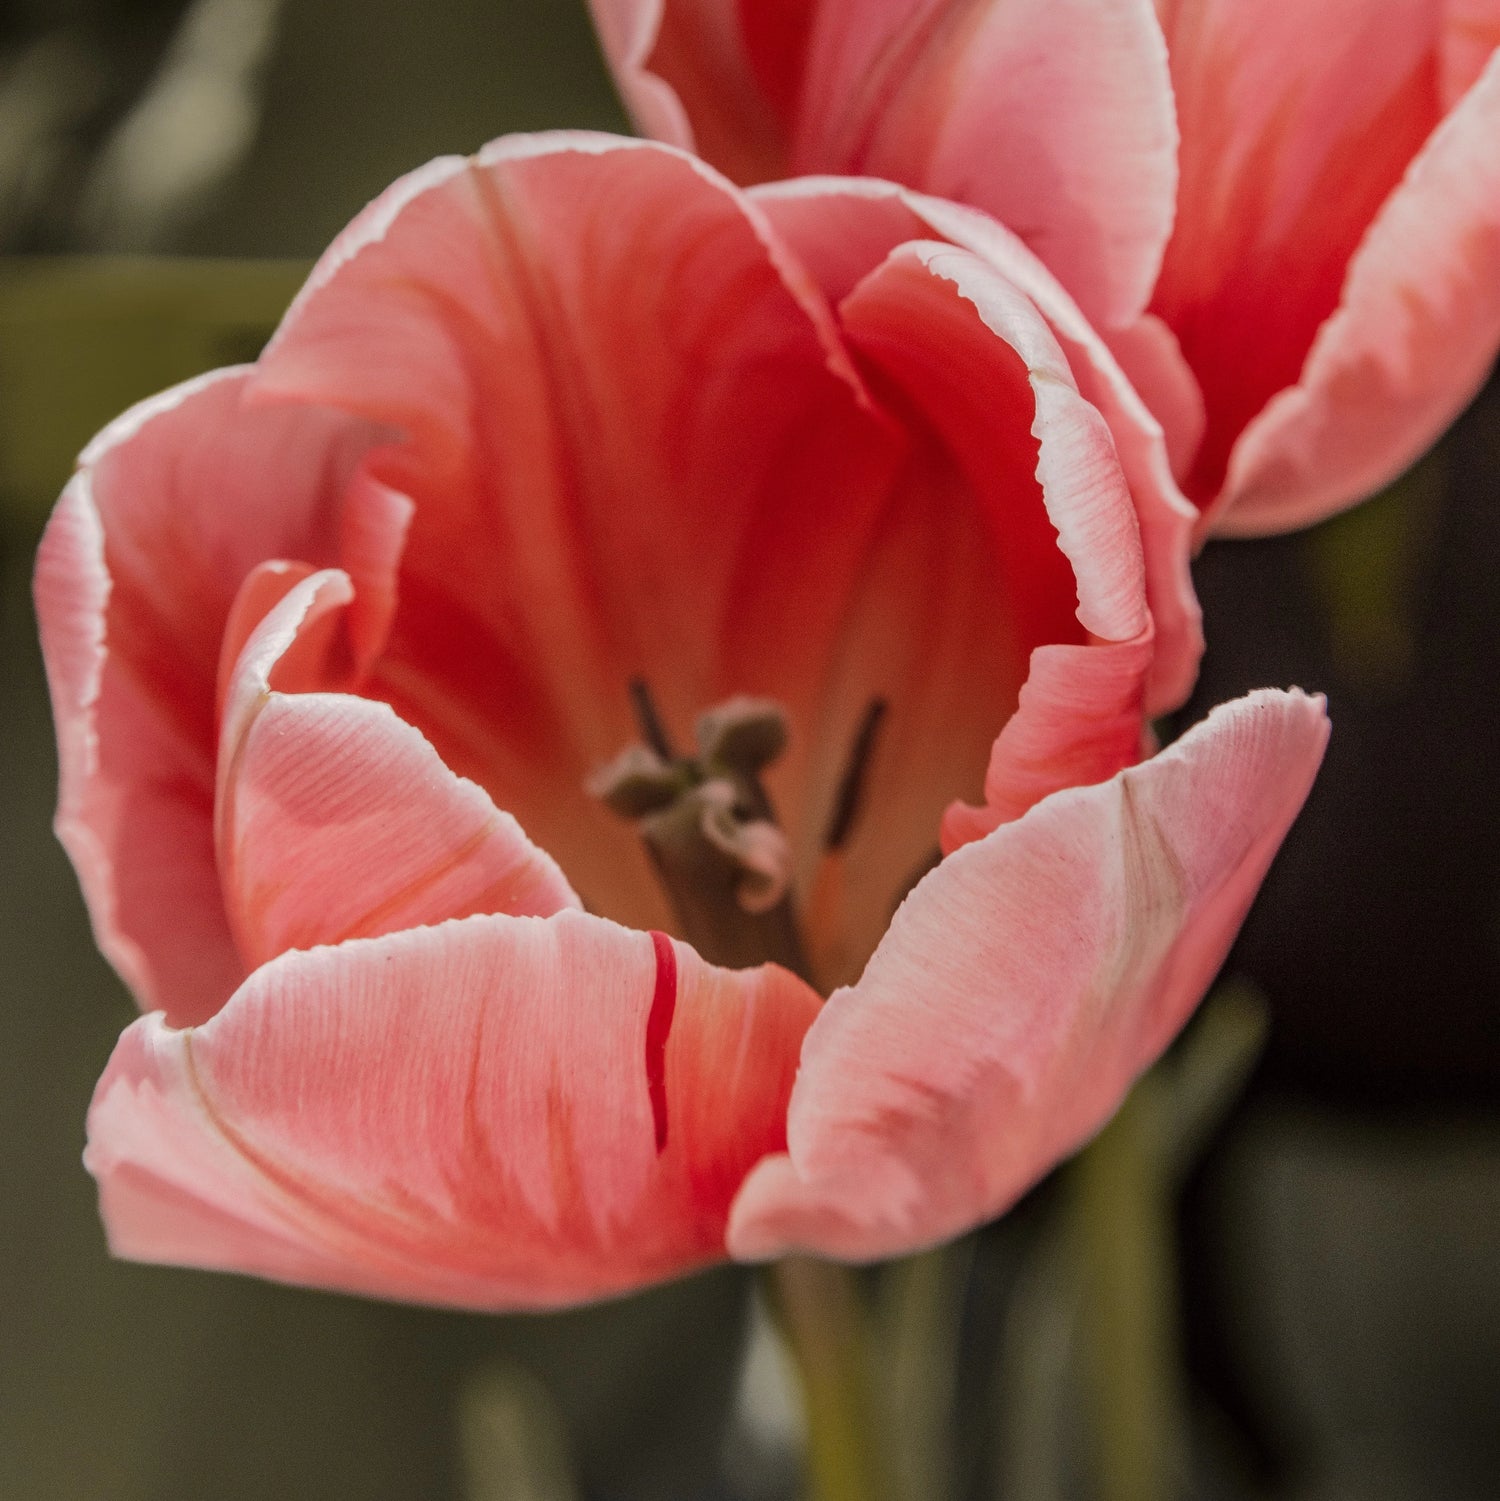 Tranh Hoa Tulip